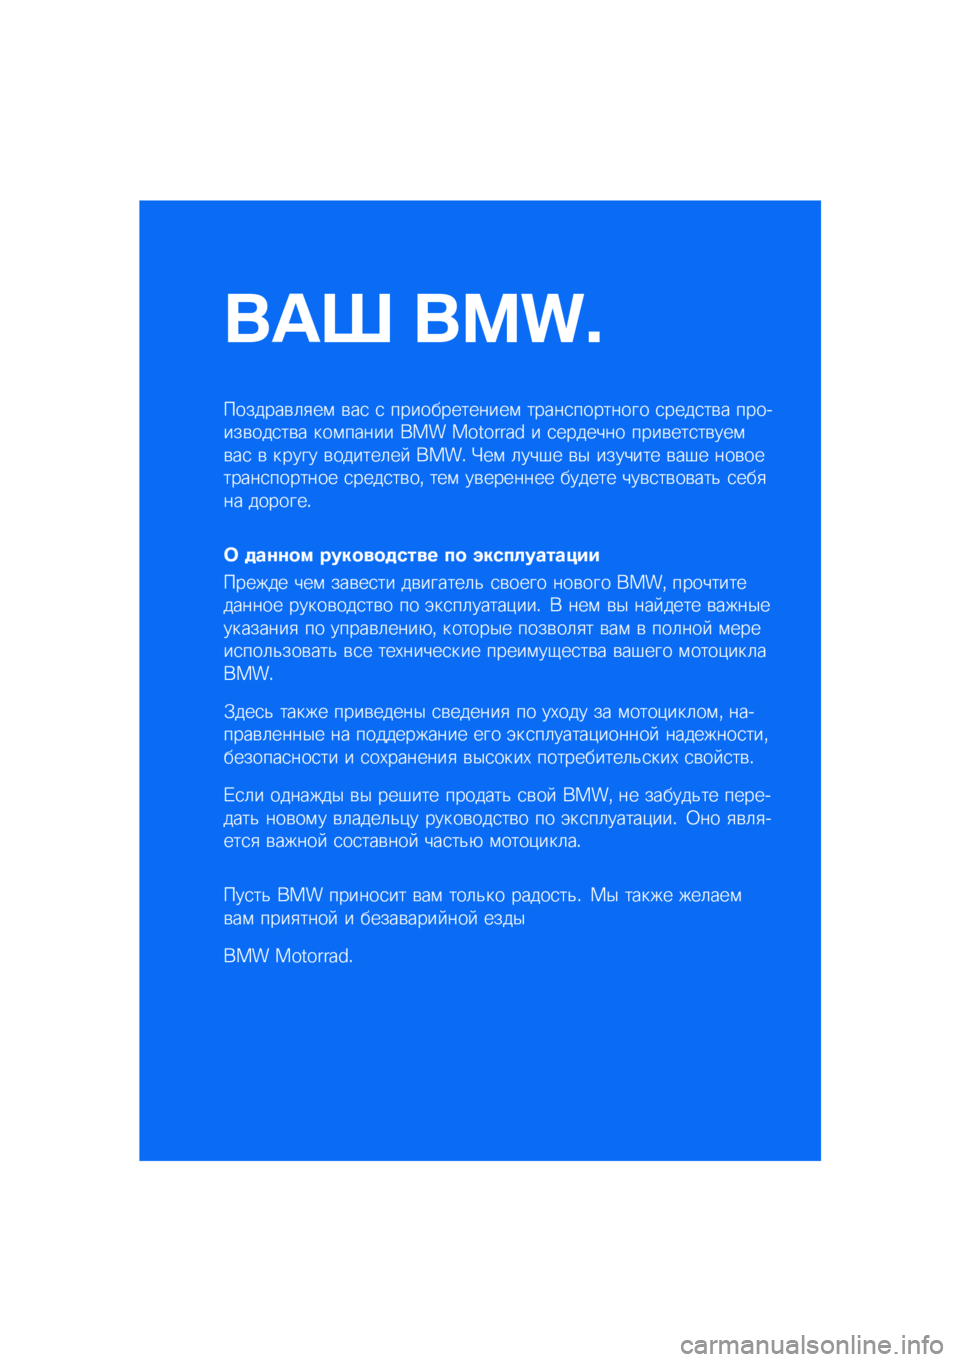 BMW MOTORRAD C 400 X 2021  Руководство по эксплуатации (in Russian) ��� ����\b
�������\b�	�
��\f �\b��
 �
 �������������\f �����
�������� �
����
��\b� �������\b���
��\b� ���\f����� ��� �������� � 